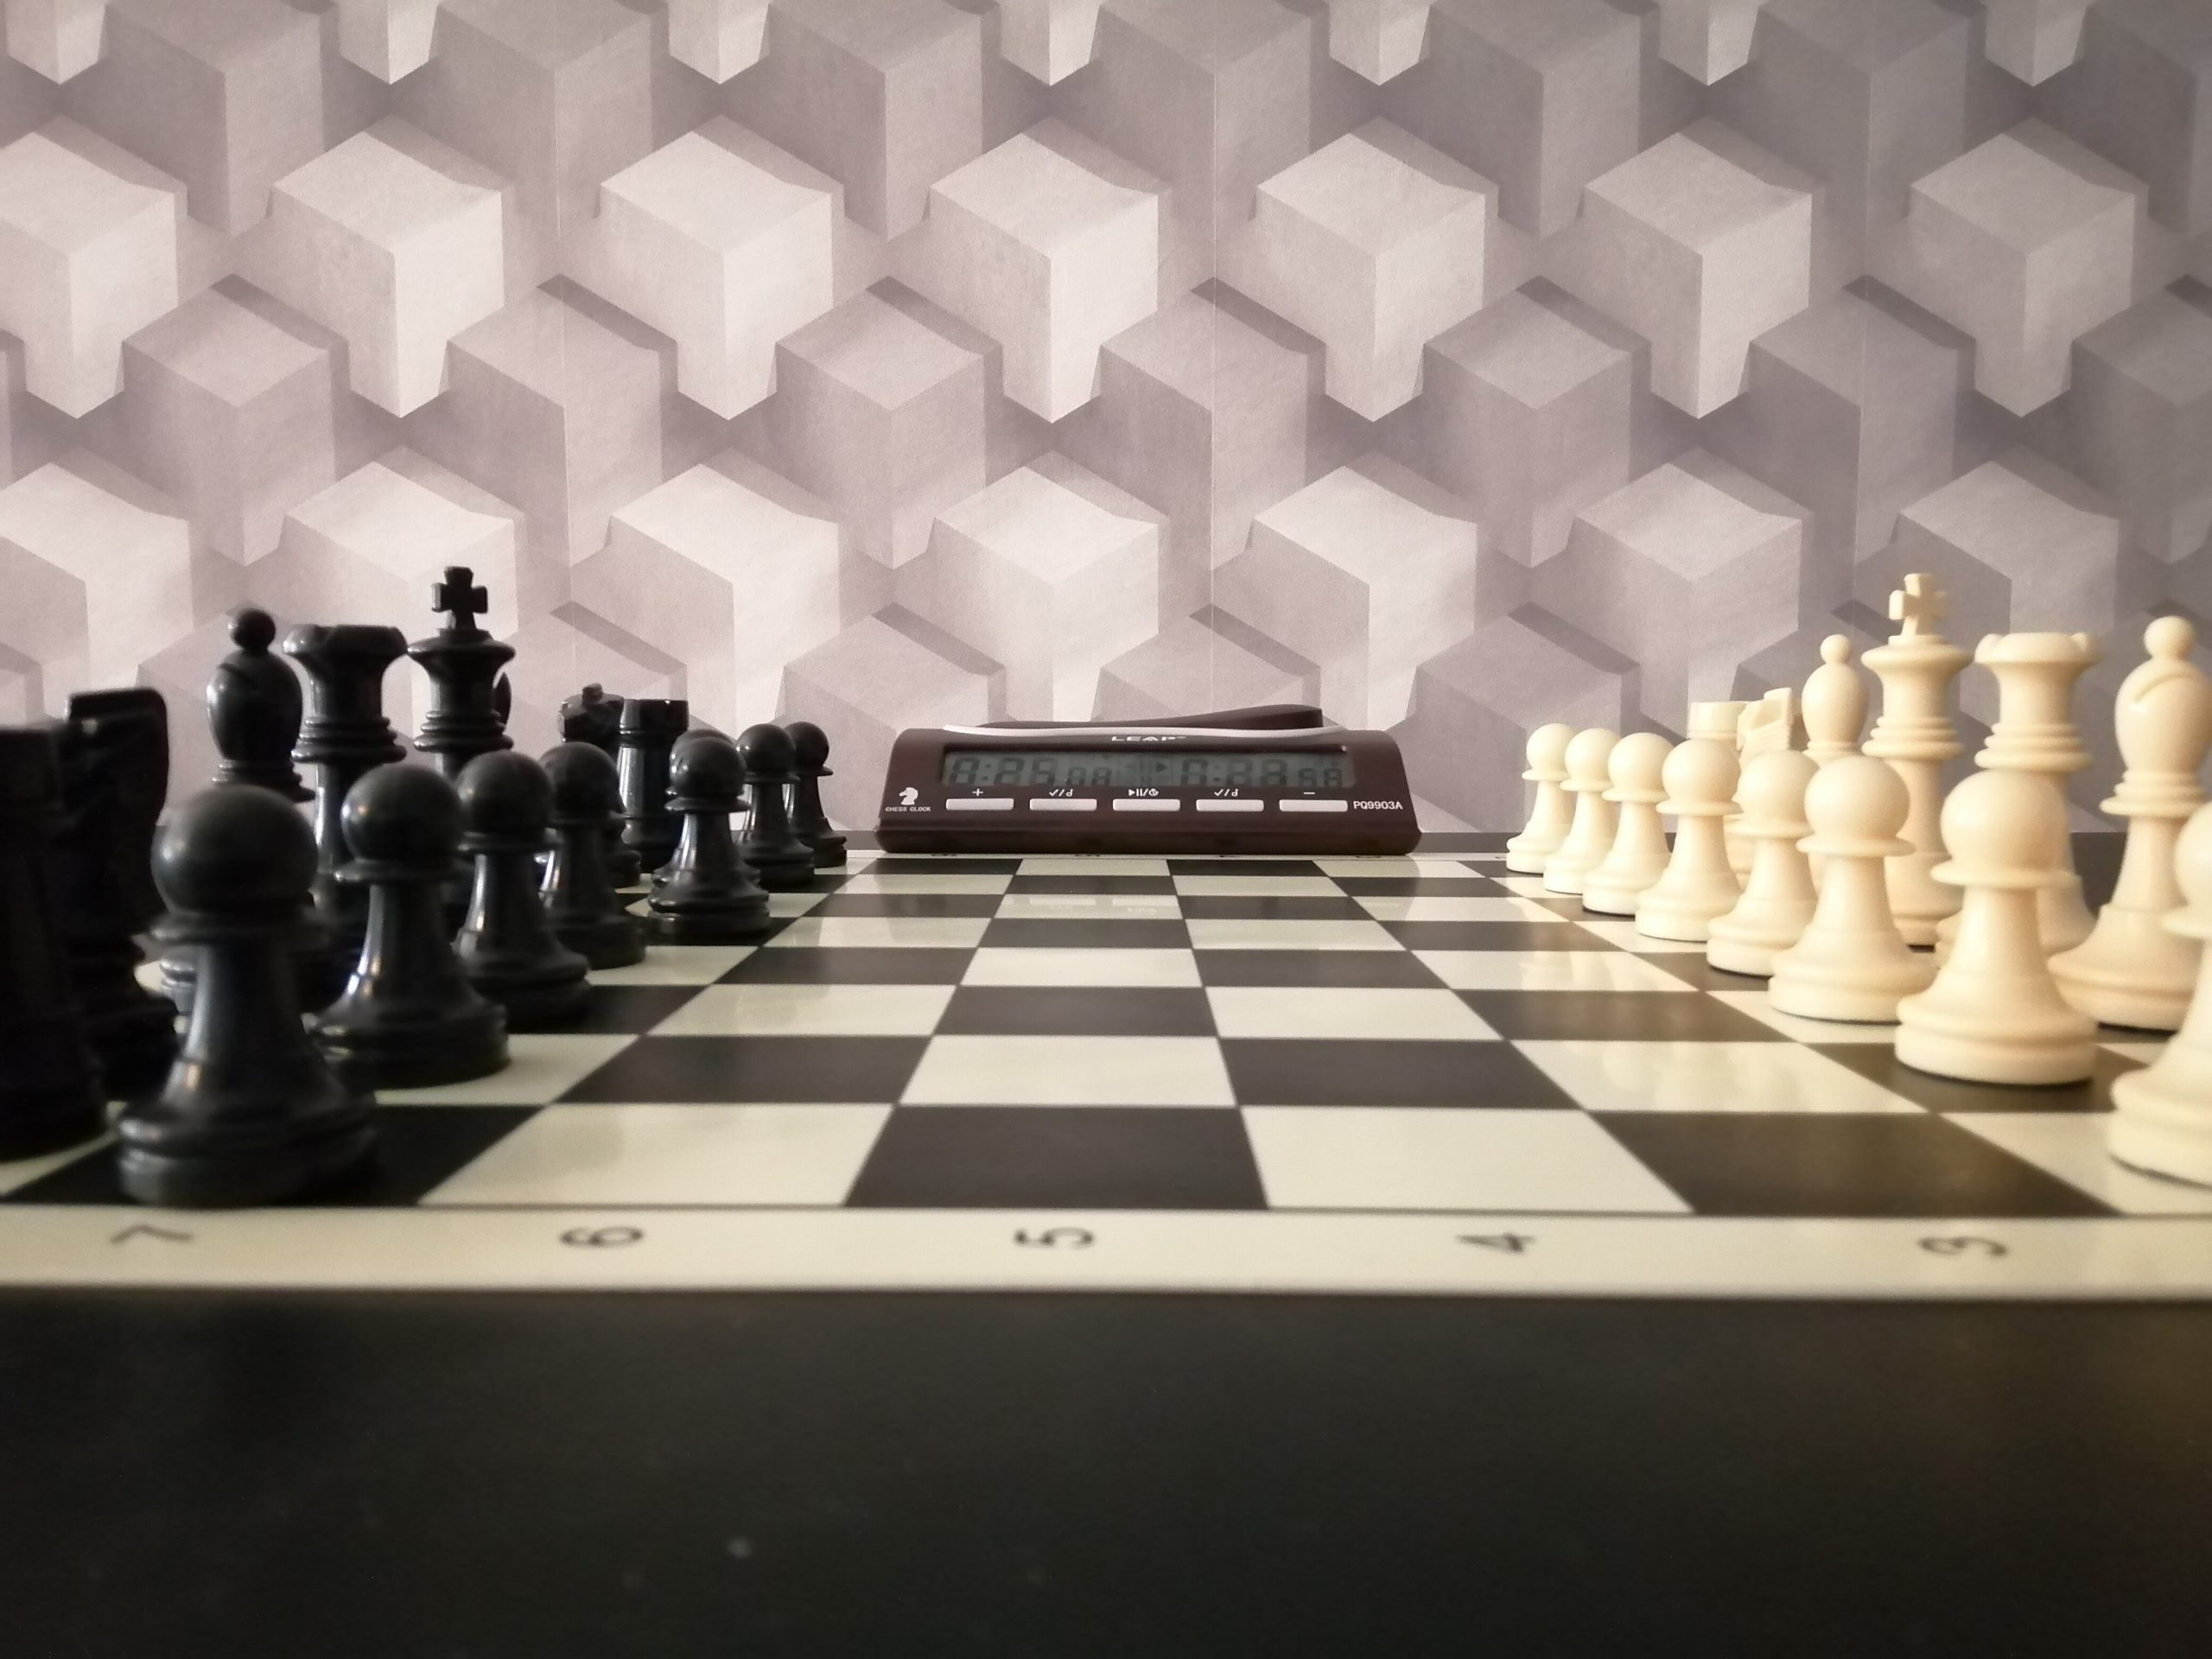 Torneo de ajedrez y partidas de ajedrez en la escuela de ajedrez blanco y negro, club de ajedrez en Madrid